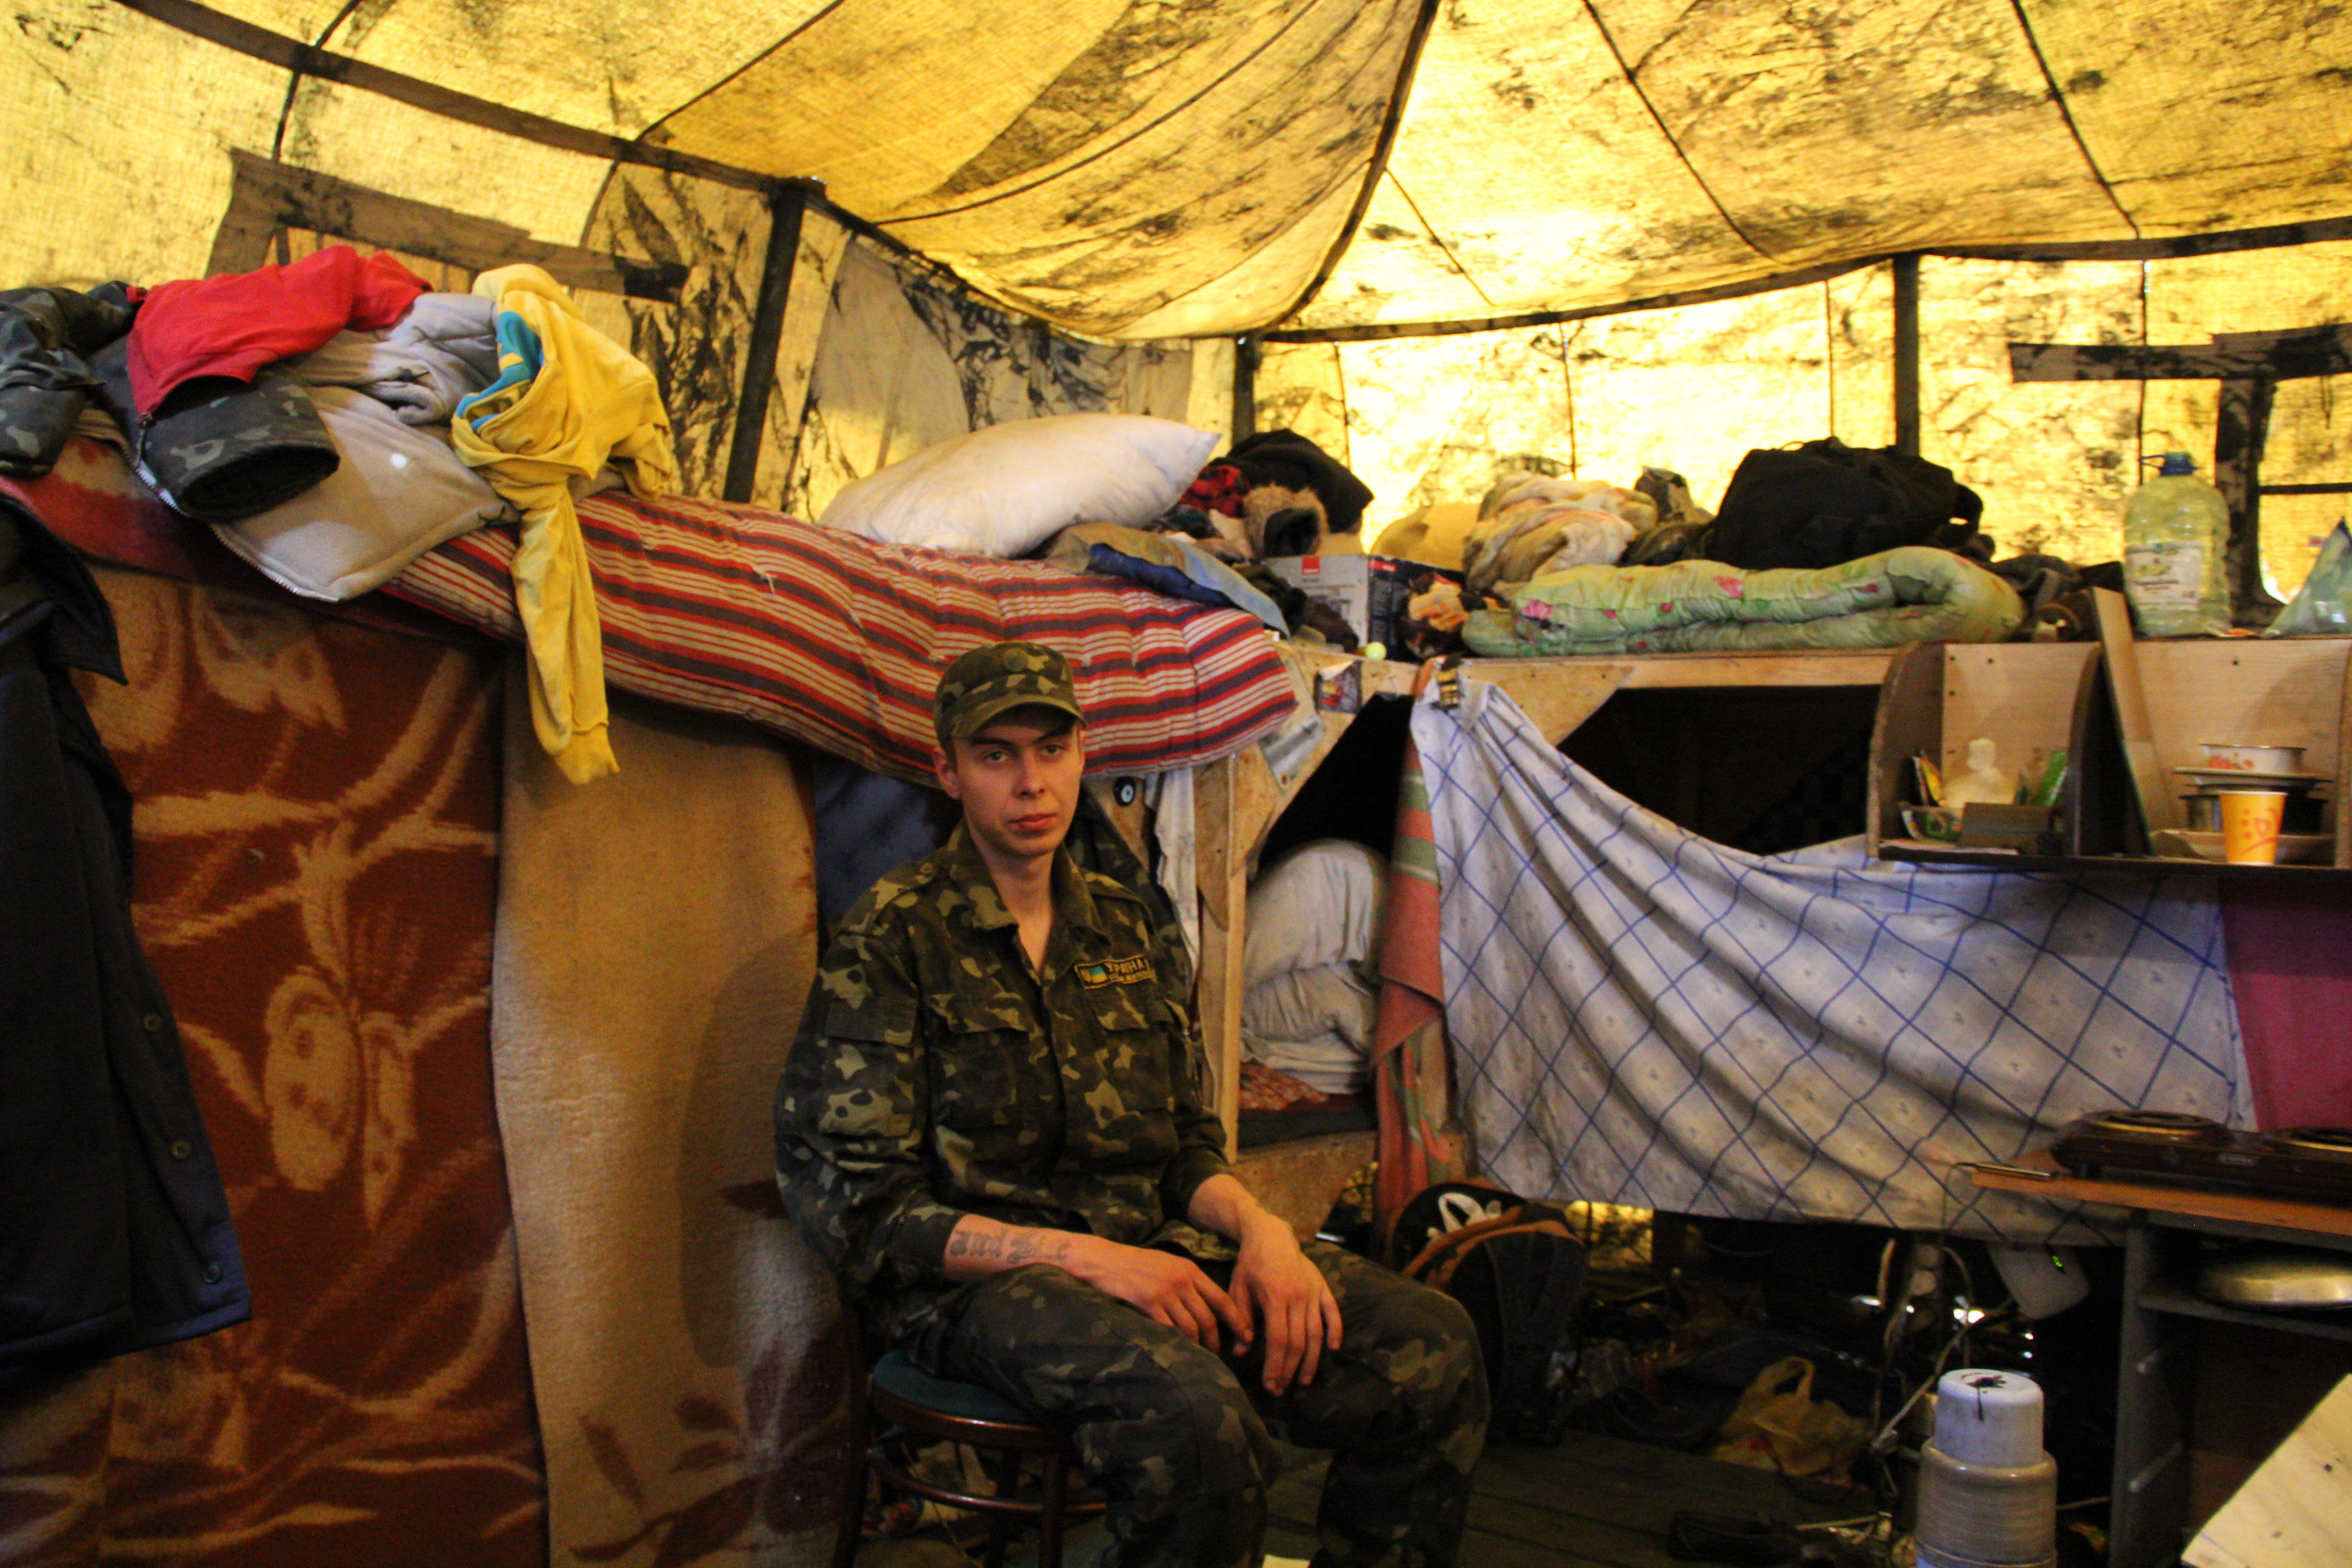 À l'intérieur d'une tente. 28 personnes dorment ici dans des conditions précaires. Crédit Pierre Sautreuil